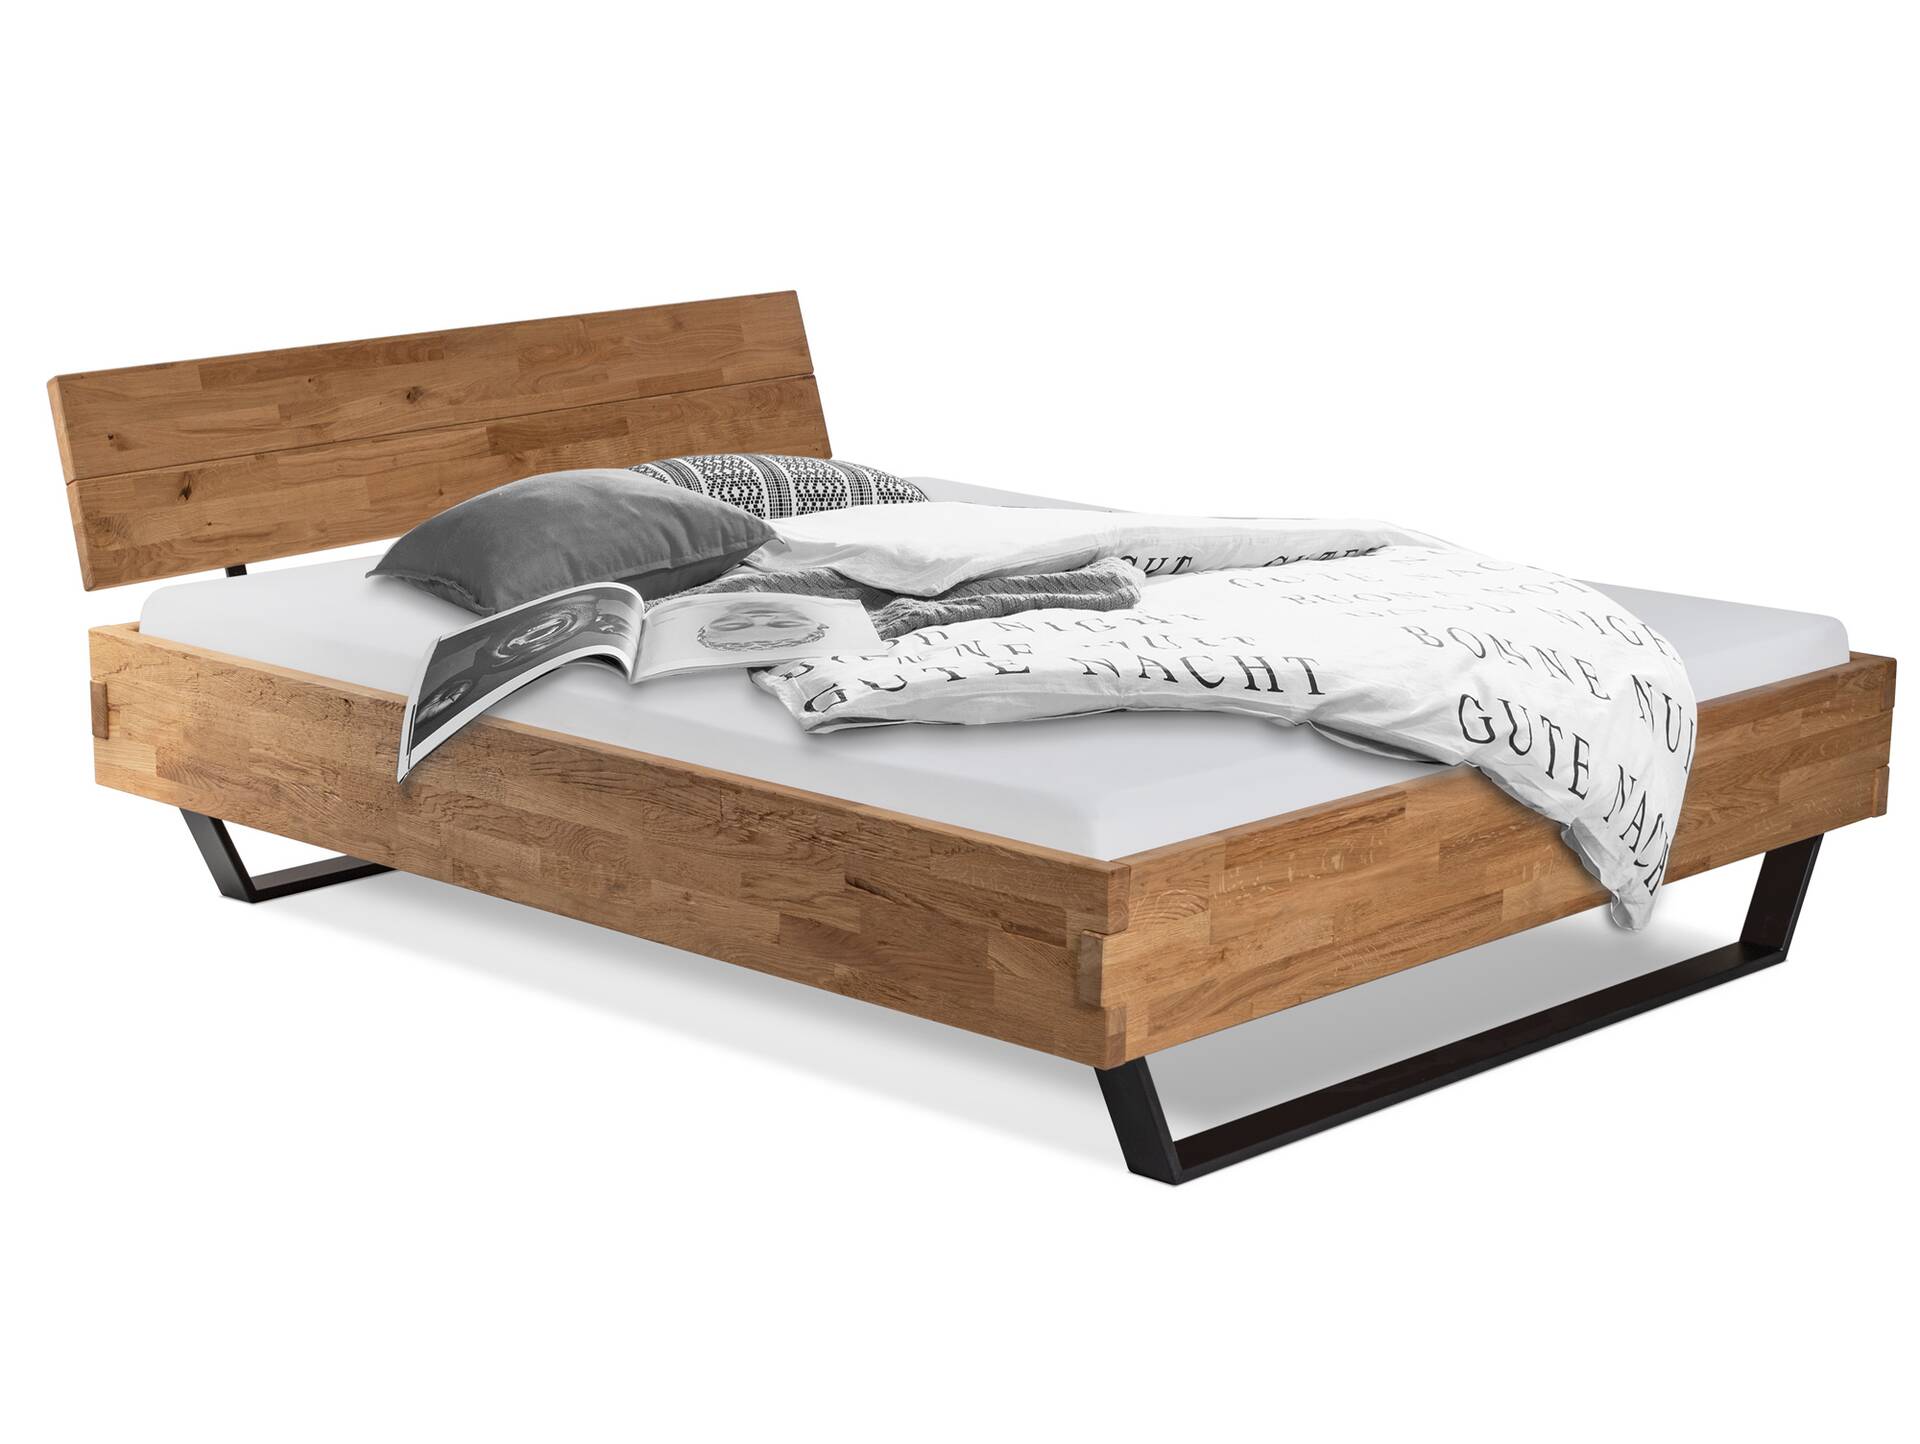 CORDINO Kufenbett aus Eiche mit Kopfteil, Material Massivholz 90 x 200 cm | Eiche lackiert | gehackt